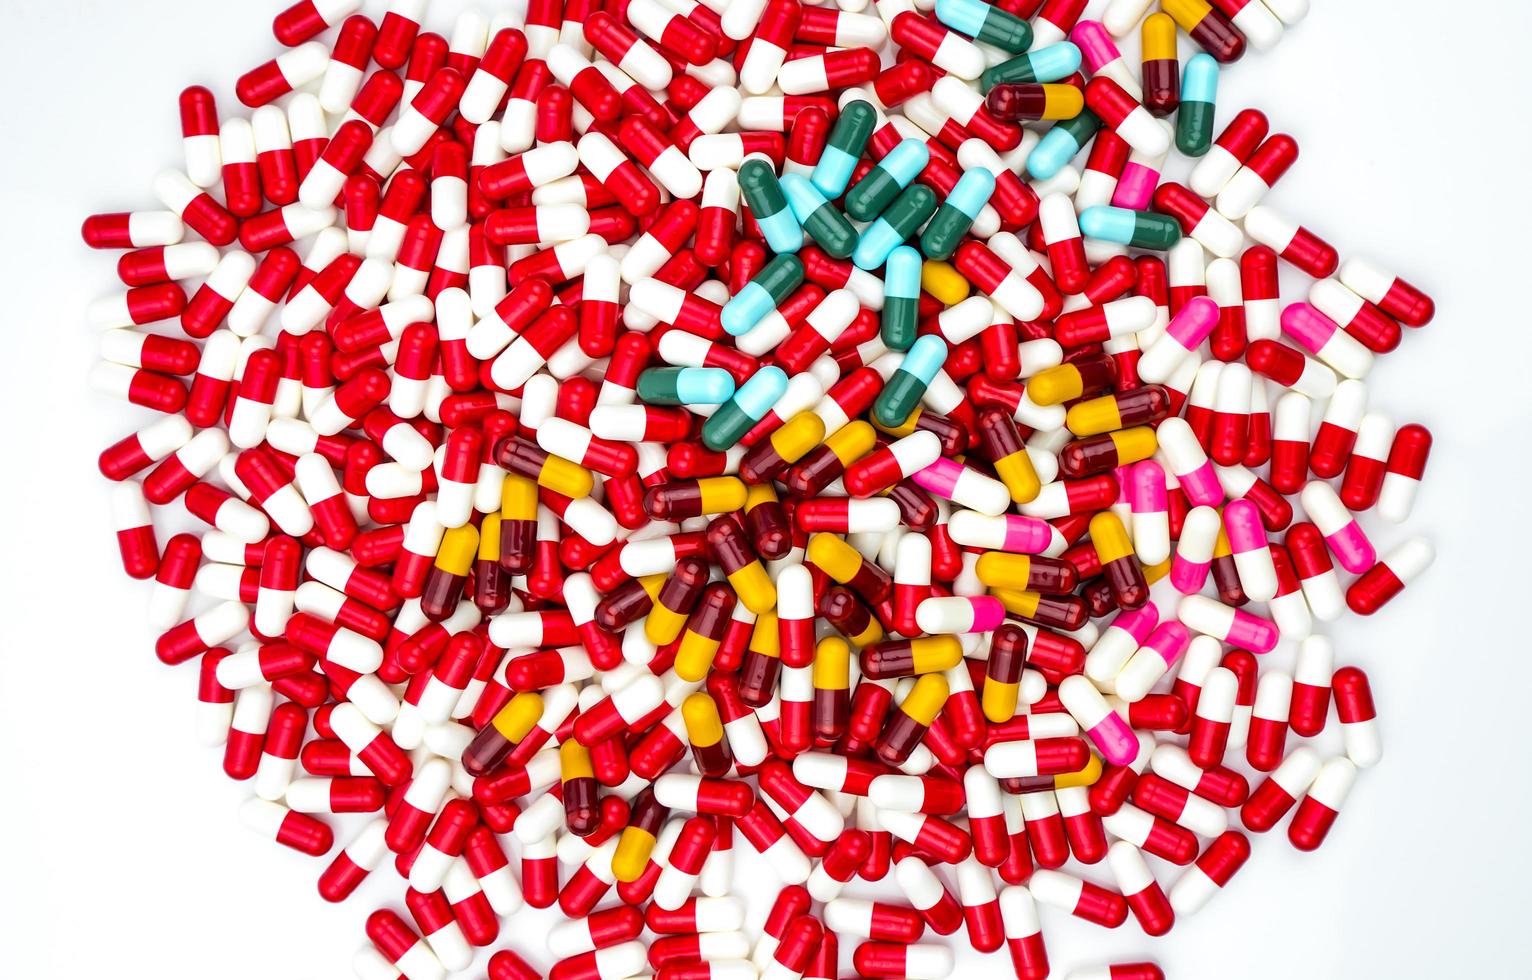 färgglada av antibiotika kapslar piller isolerad på vit bakgrund med kopia utrymme. läkemedelsresistens koncept. antibiotikadroganvändning med rimligt och globalt hälsokoncept. foto